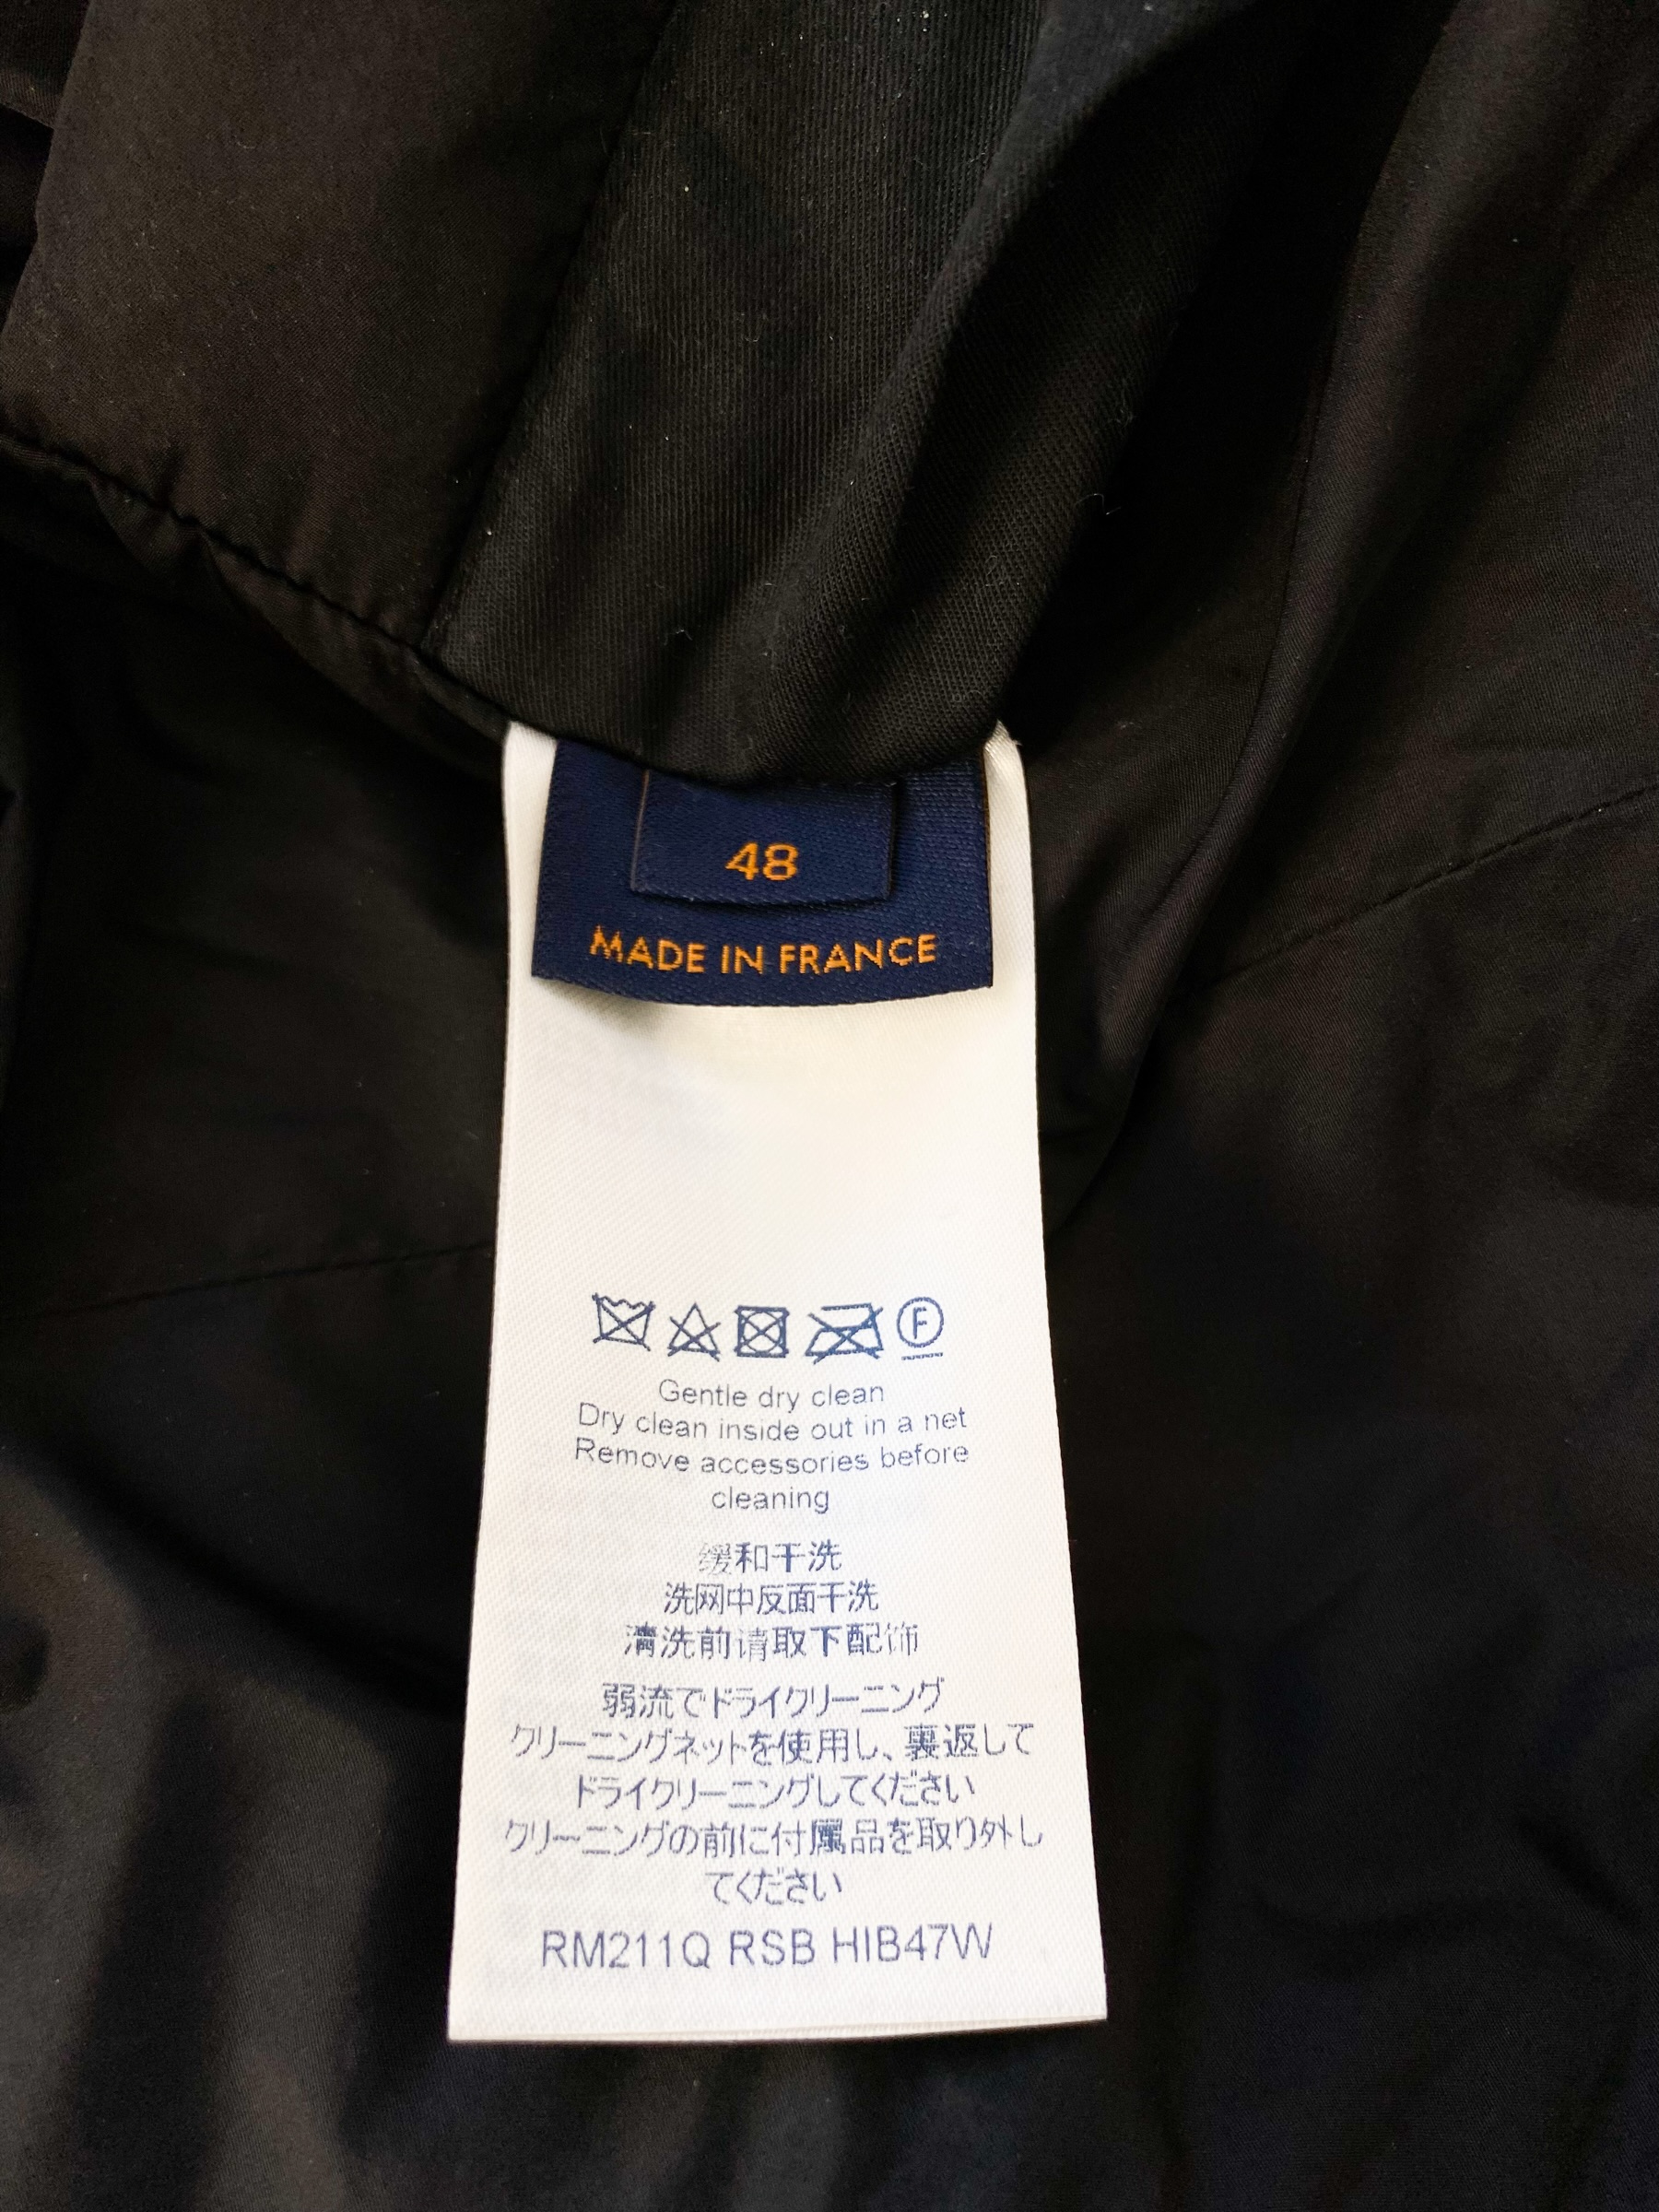 Louis Vuitton Ice Blue Flower Monogram Puffer Jacket – Savonches